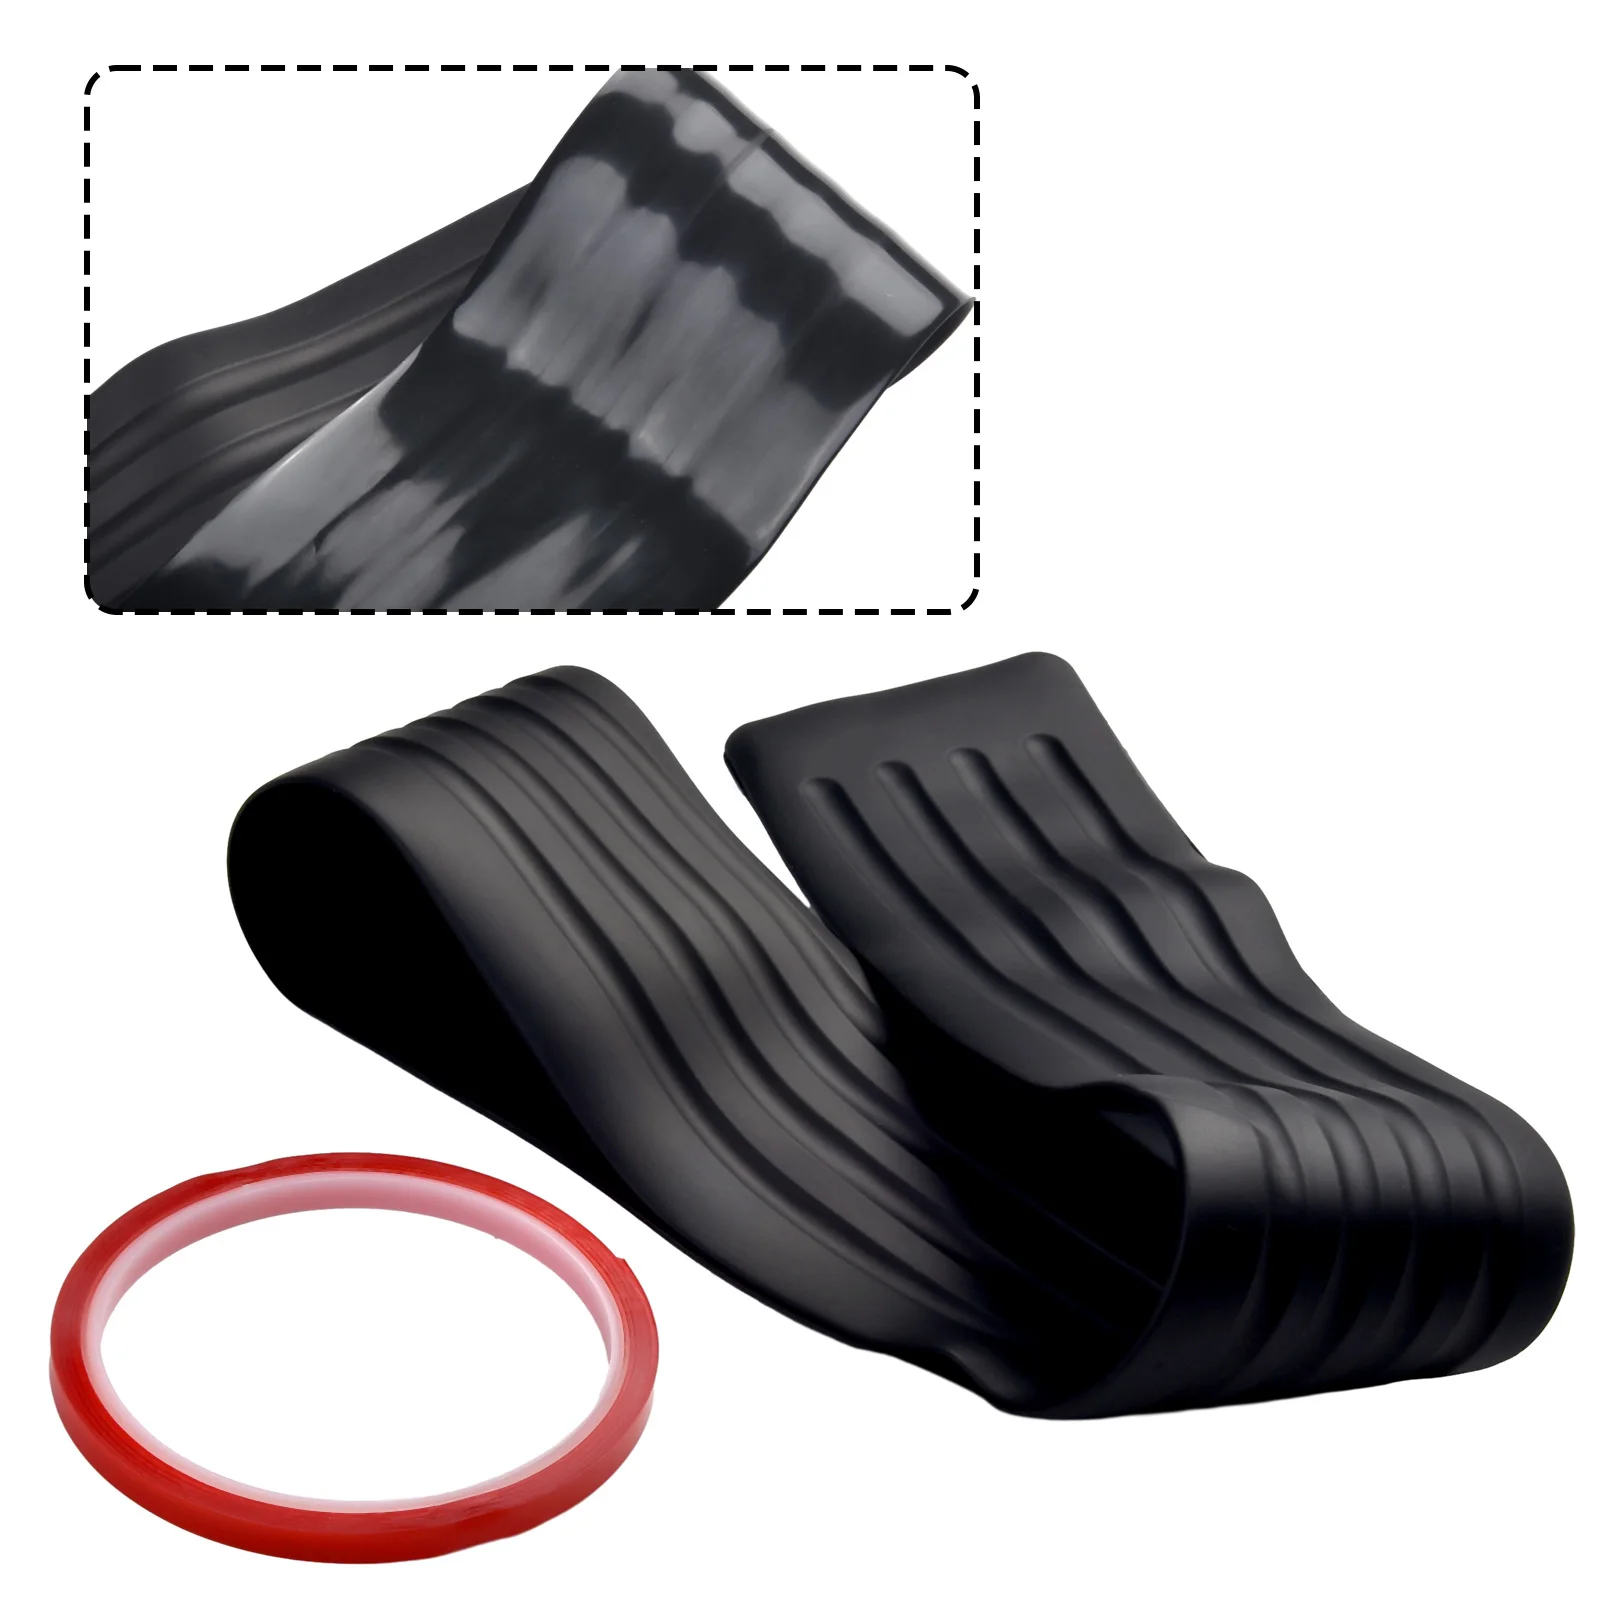 Задний резиновый бампер автомобиля, Резиновая накладка, накладка для защиты заднего бампера, накладка для защиты от царапин, резиновая накладка для защиты от царапин, черные автомобильные аксессуары